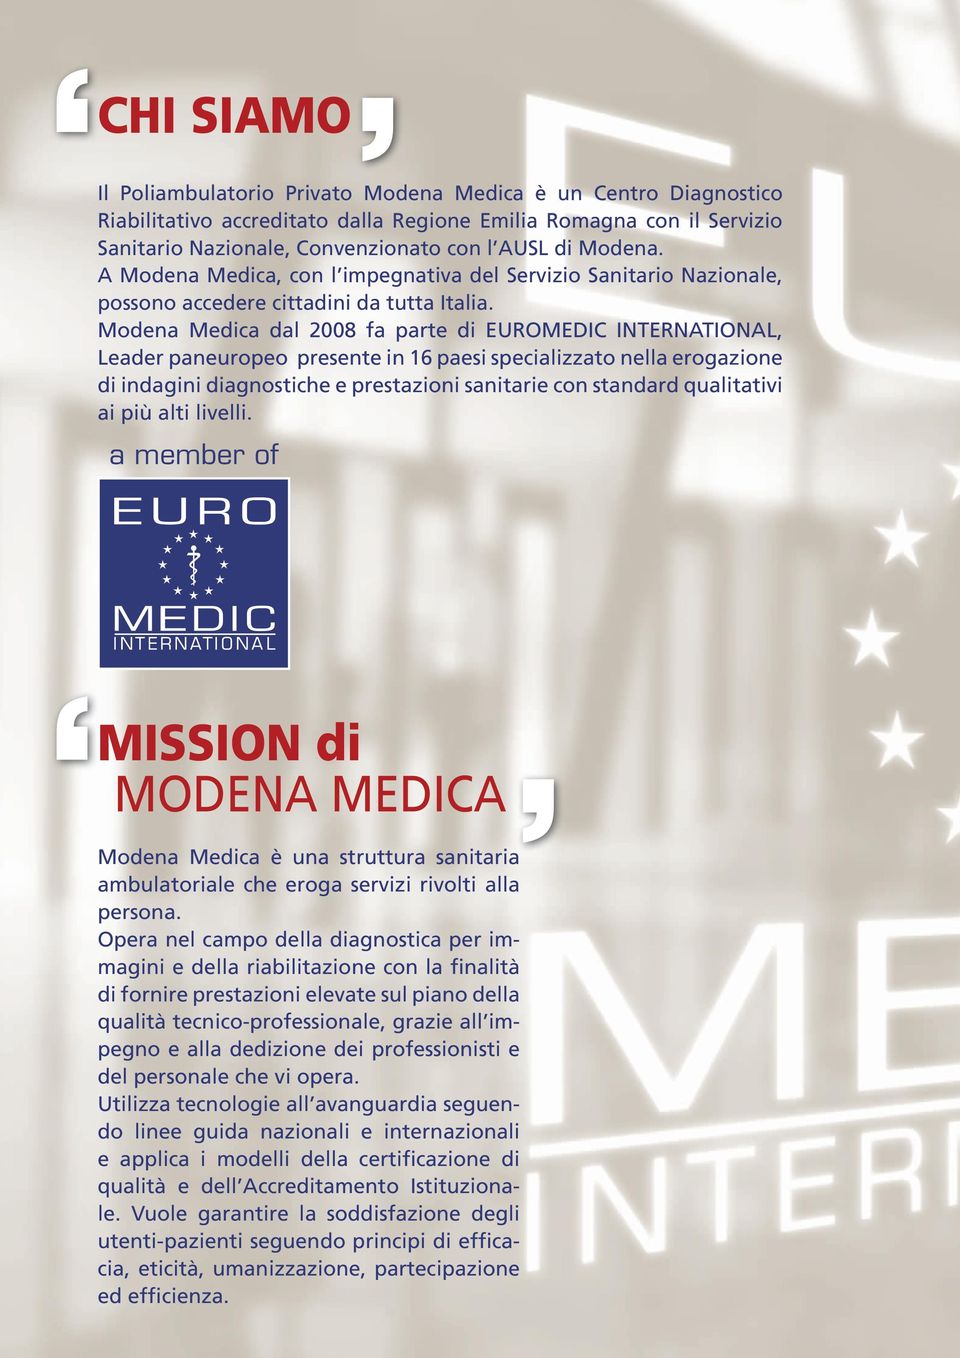 Modena Medica dal 2008 fa parte di EUROMEDIC INTERNATIONAL, Leader paneuropeo presente in 16 paesi specializzato nella erogazione di indagini diagnostiche e prestazioni sanitarie con standard